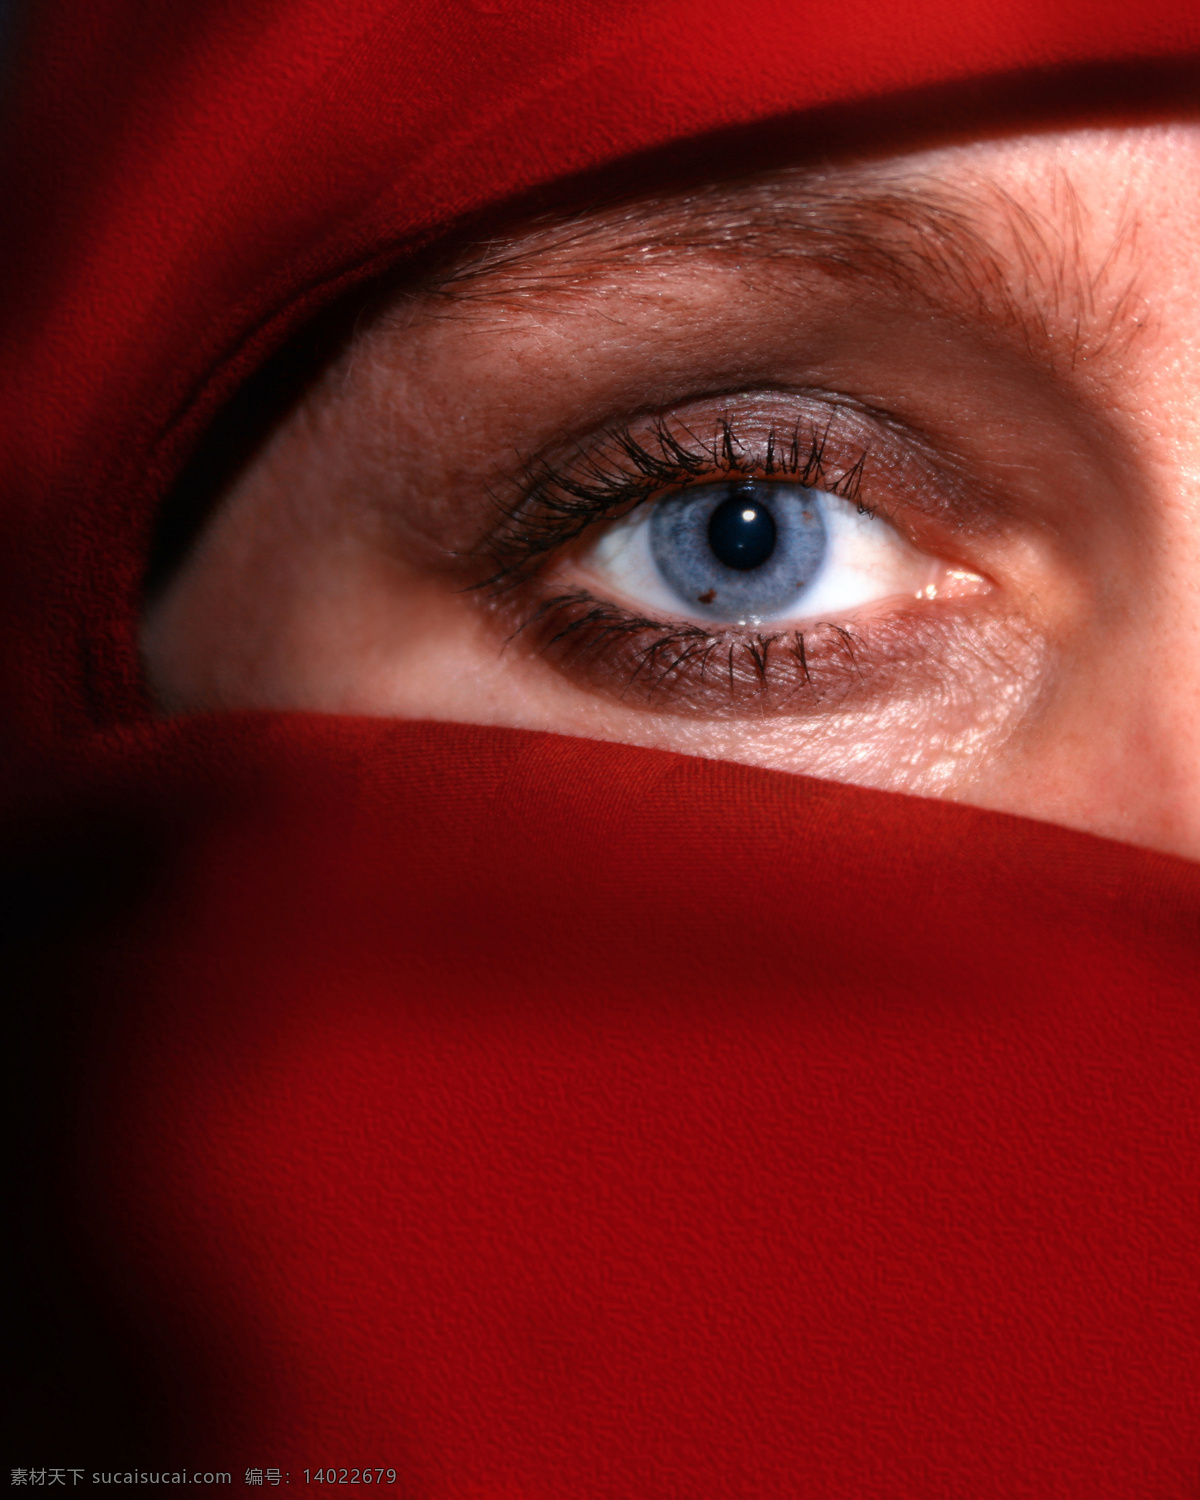 女人眼睛特写 女人 女性 蓝色眼睛 特写 蒙面 伊斯兰 女性女人 人物图库